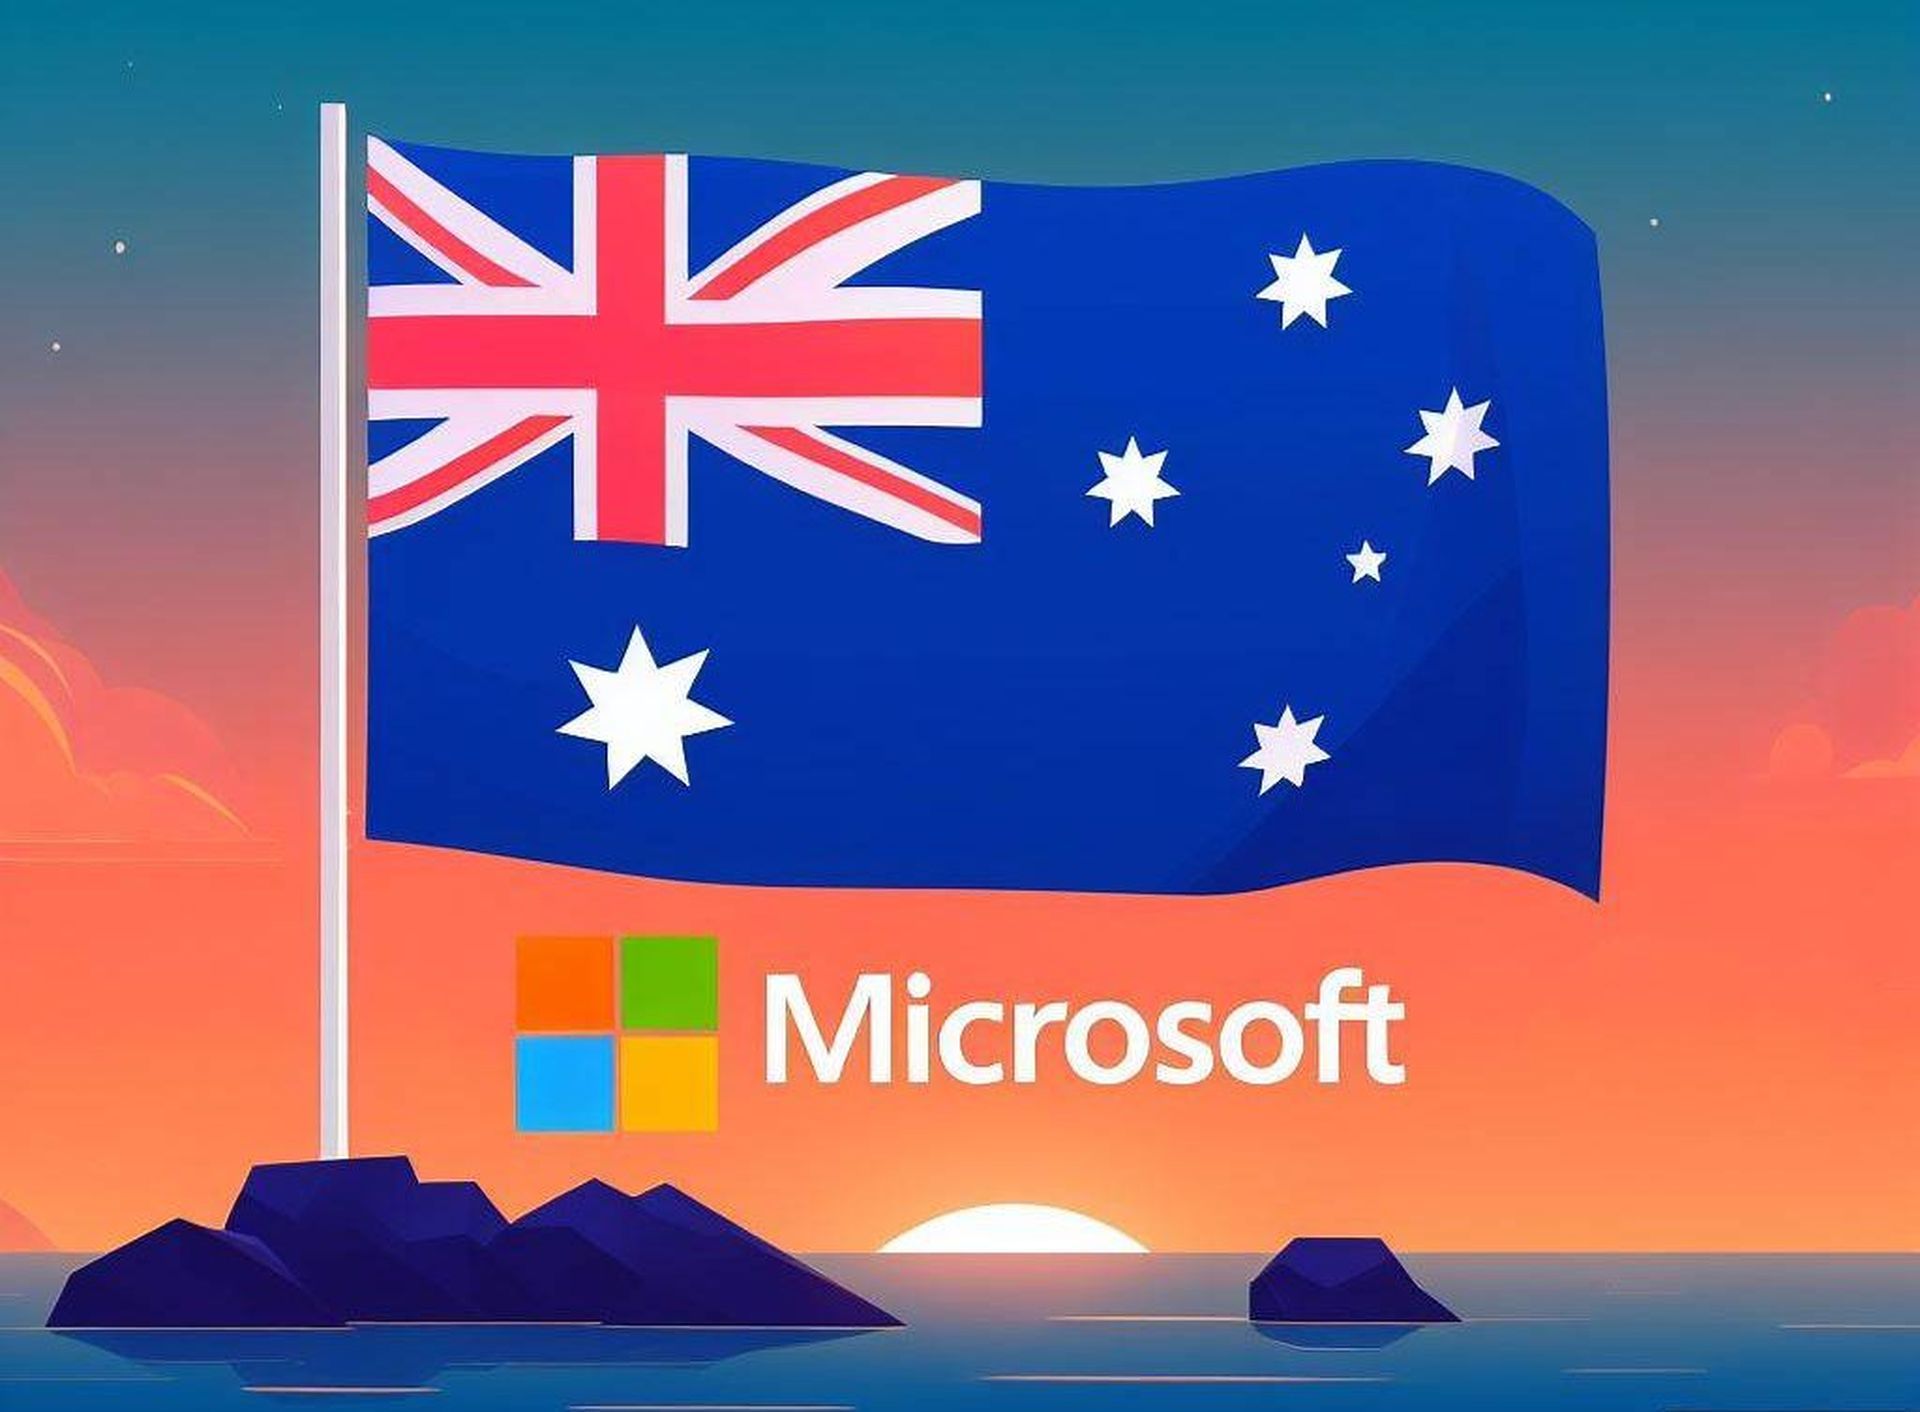 Microsoft Australia